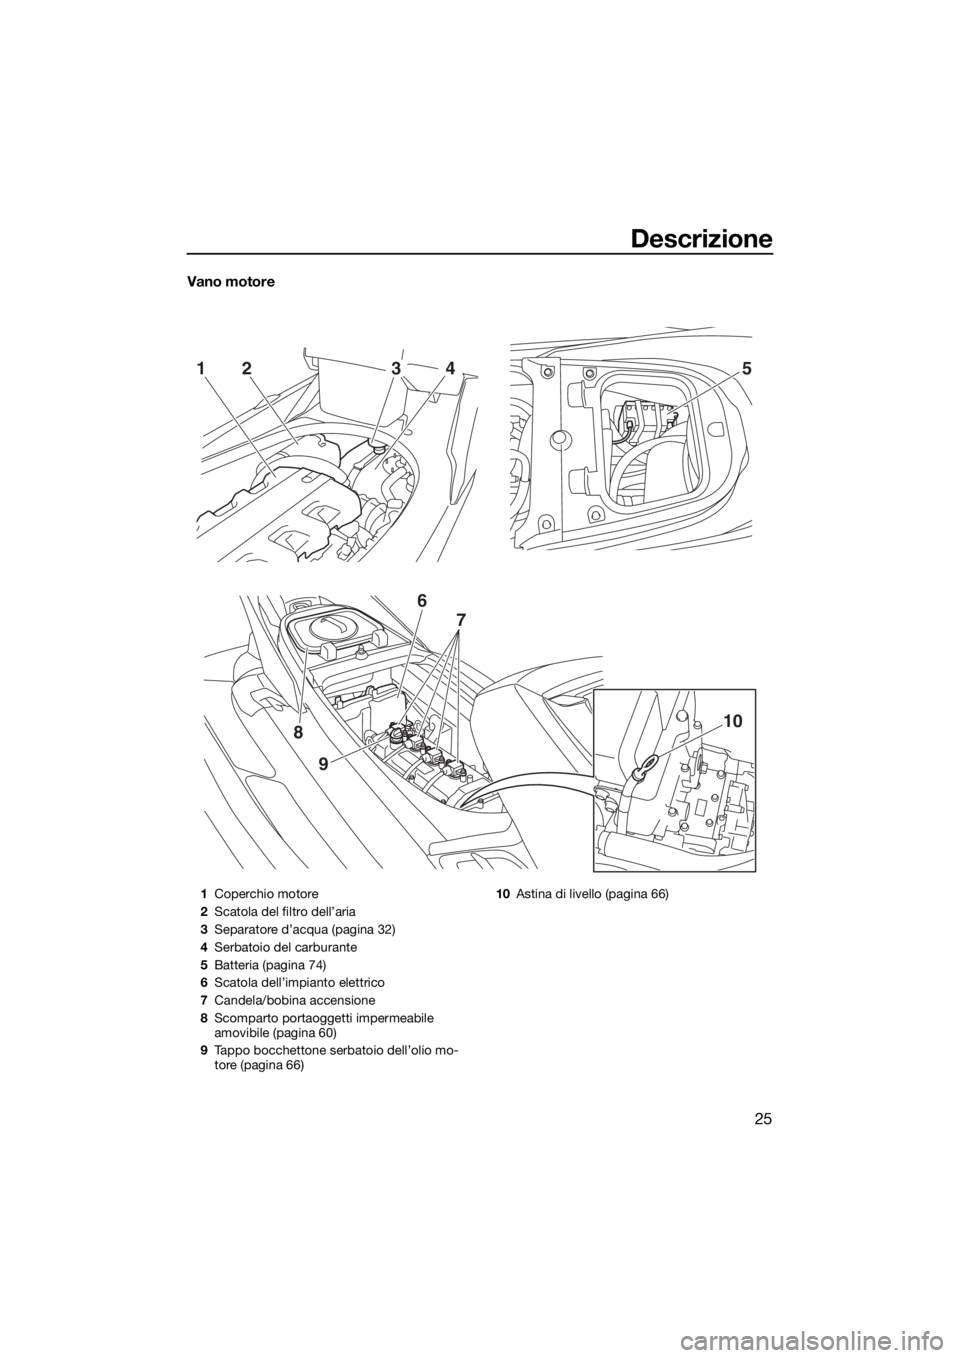 YAMAHA FX HO CRUISER 2018  Manuale duso (in Italian) Descrizione
25
Vano motore
52143
9
8
6
7
10
1Coperchio motore
2Scatola del filtro dell’aria
3Separatore d’acqua (pagina 32)
4Serbatoio del carburante
5Batteria (pagina 74)
6Scatola dell’impianto